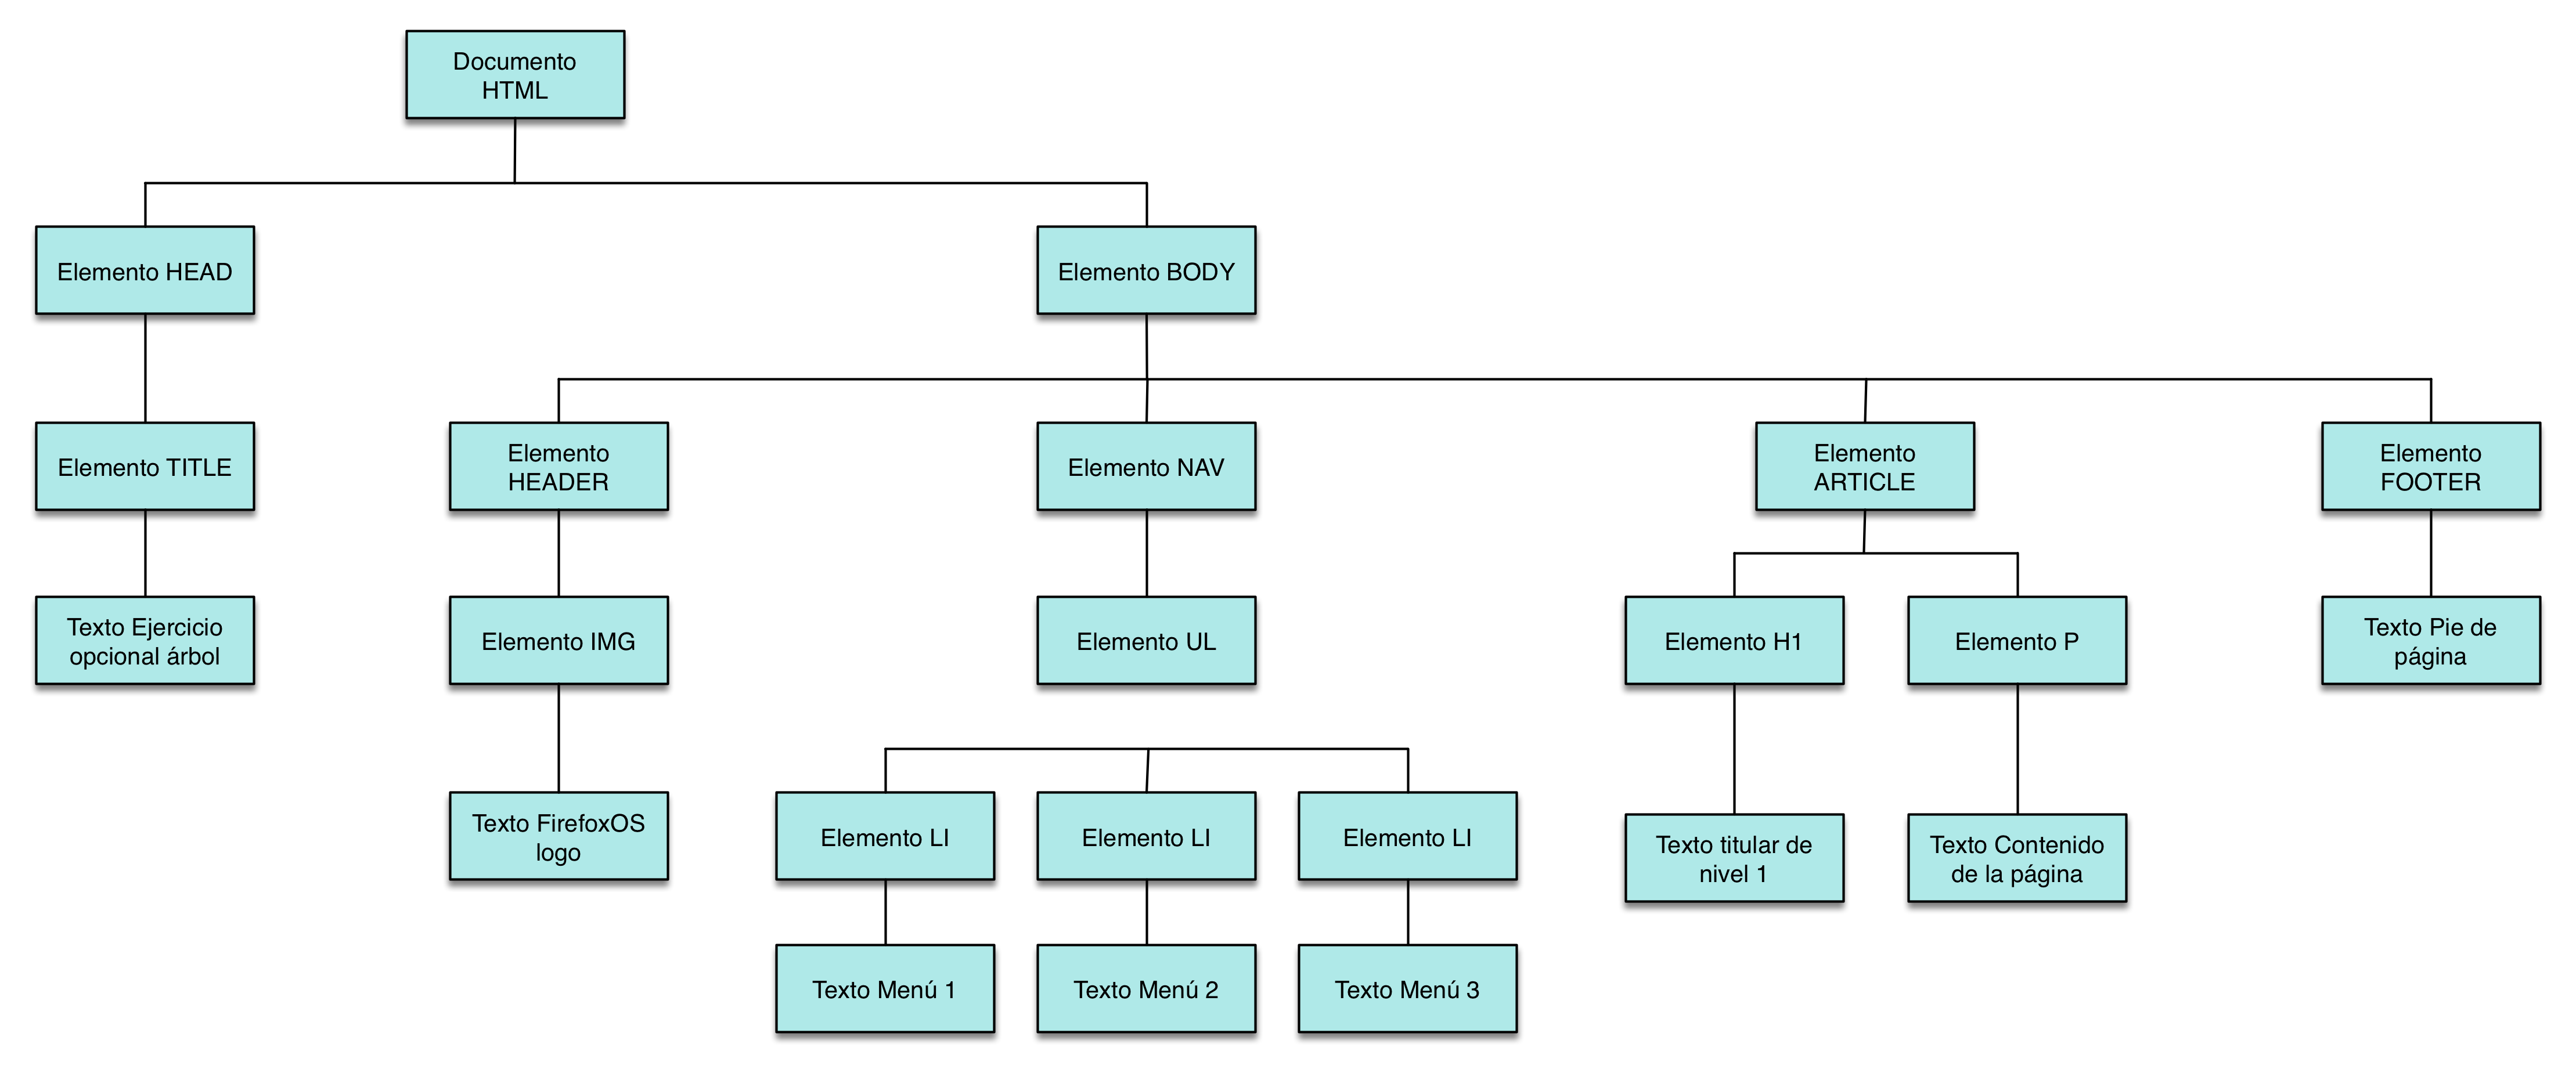 Estructura de árbol